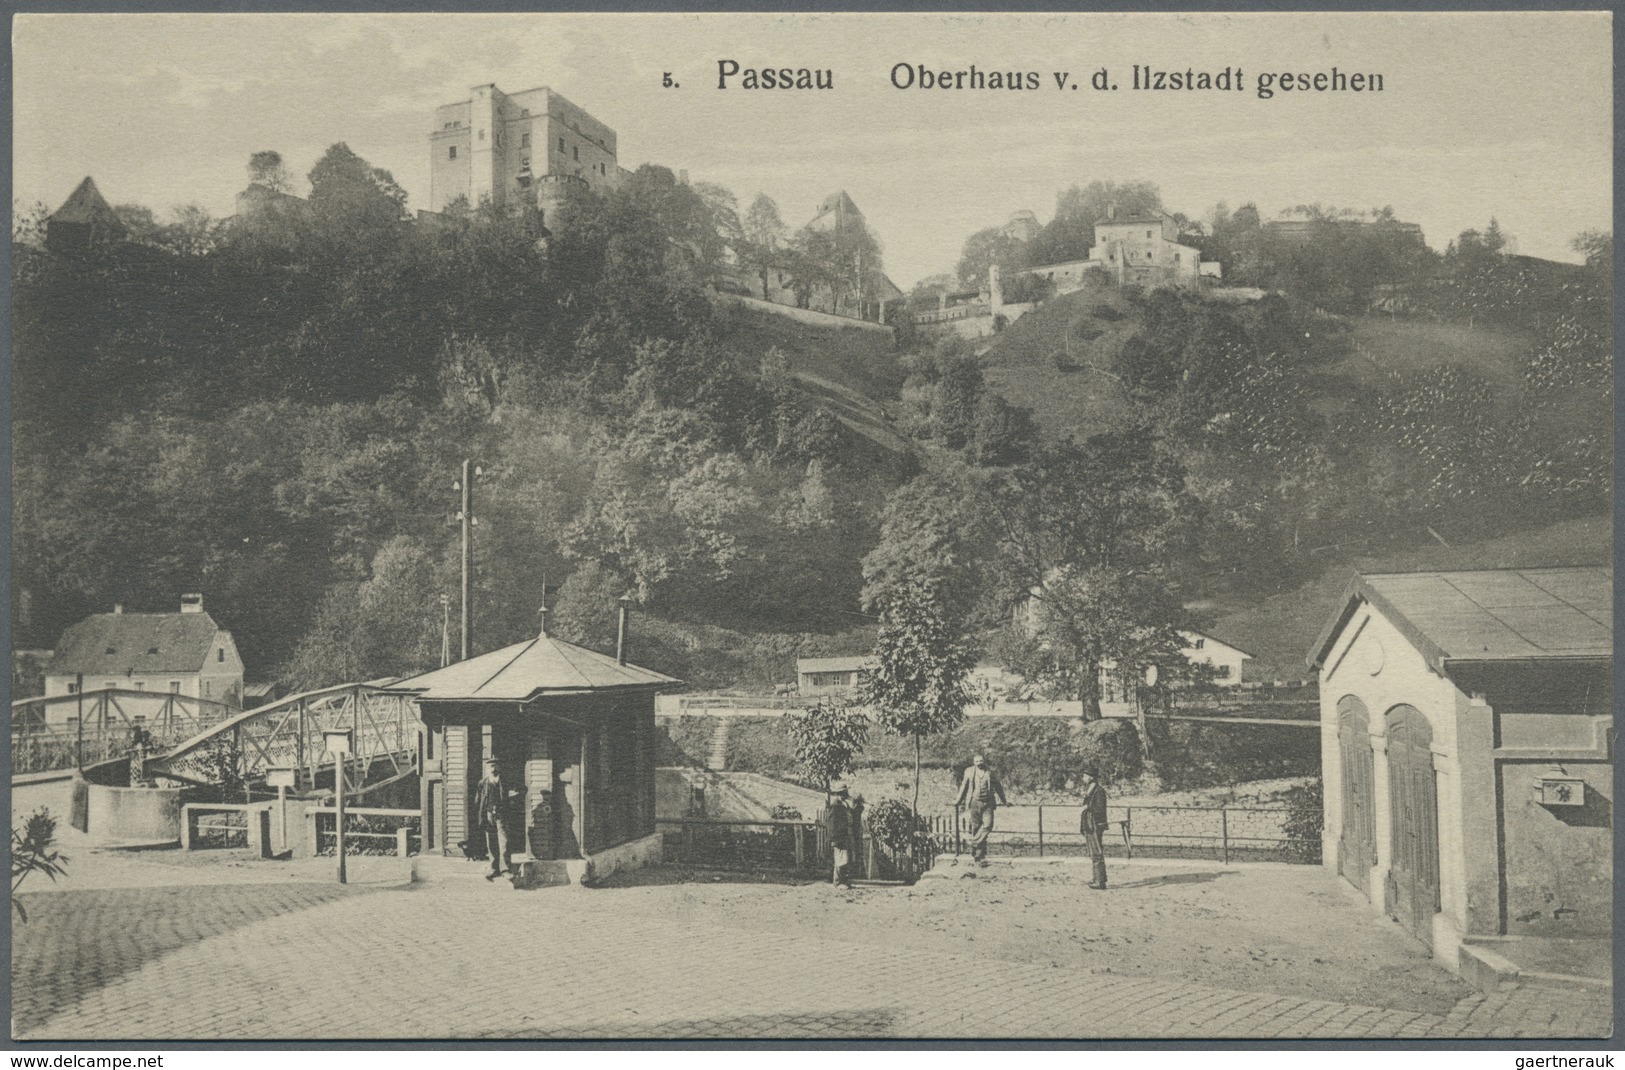 Ansichtskarten: Bayern: PASSAU Stadt (alte PLZ 8390), eine reizvolle Partie mit über 350 Ansichtskar